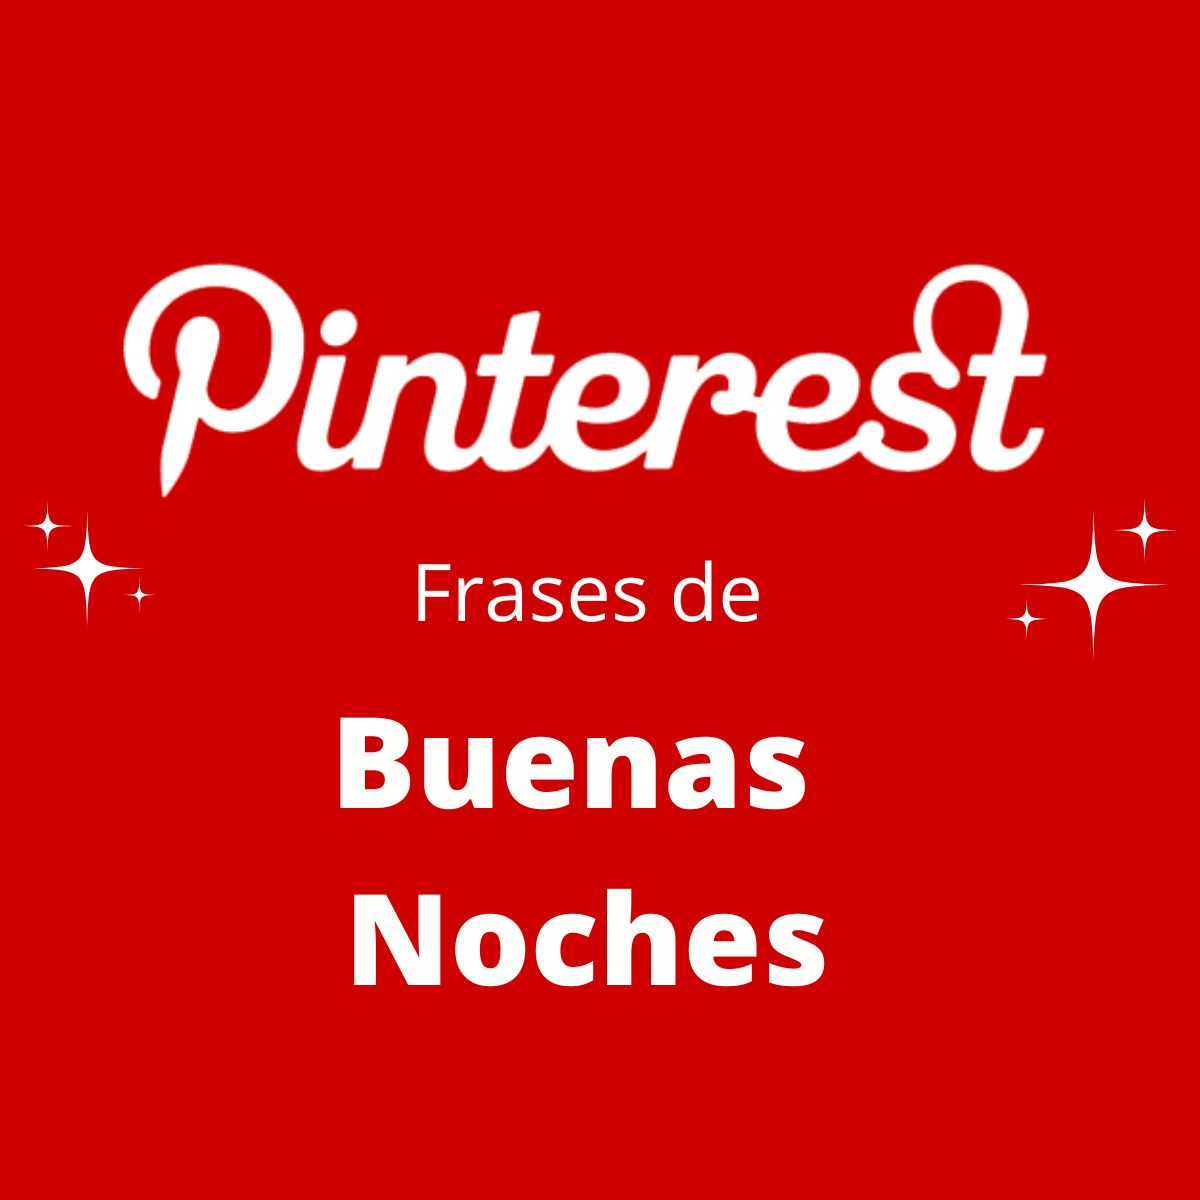 Las Mejores Frases de Buenas Noches en Pinterest